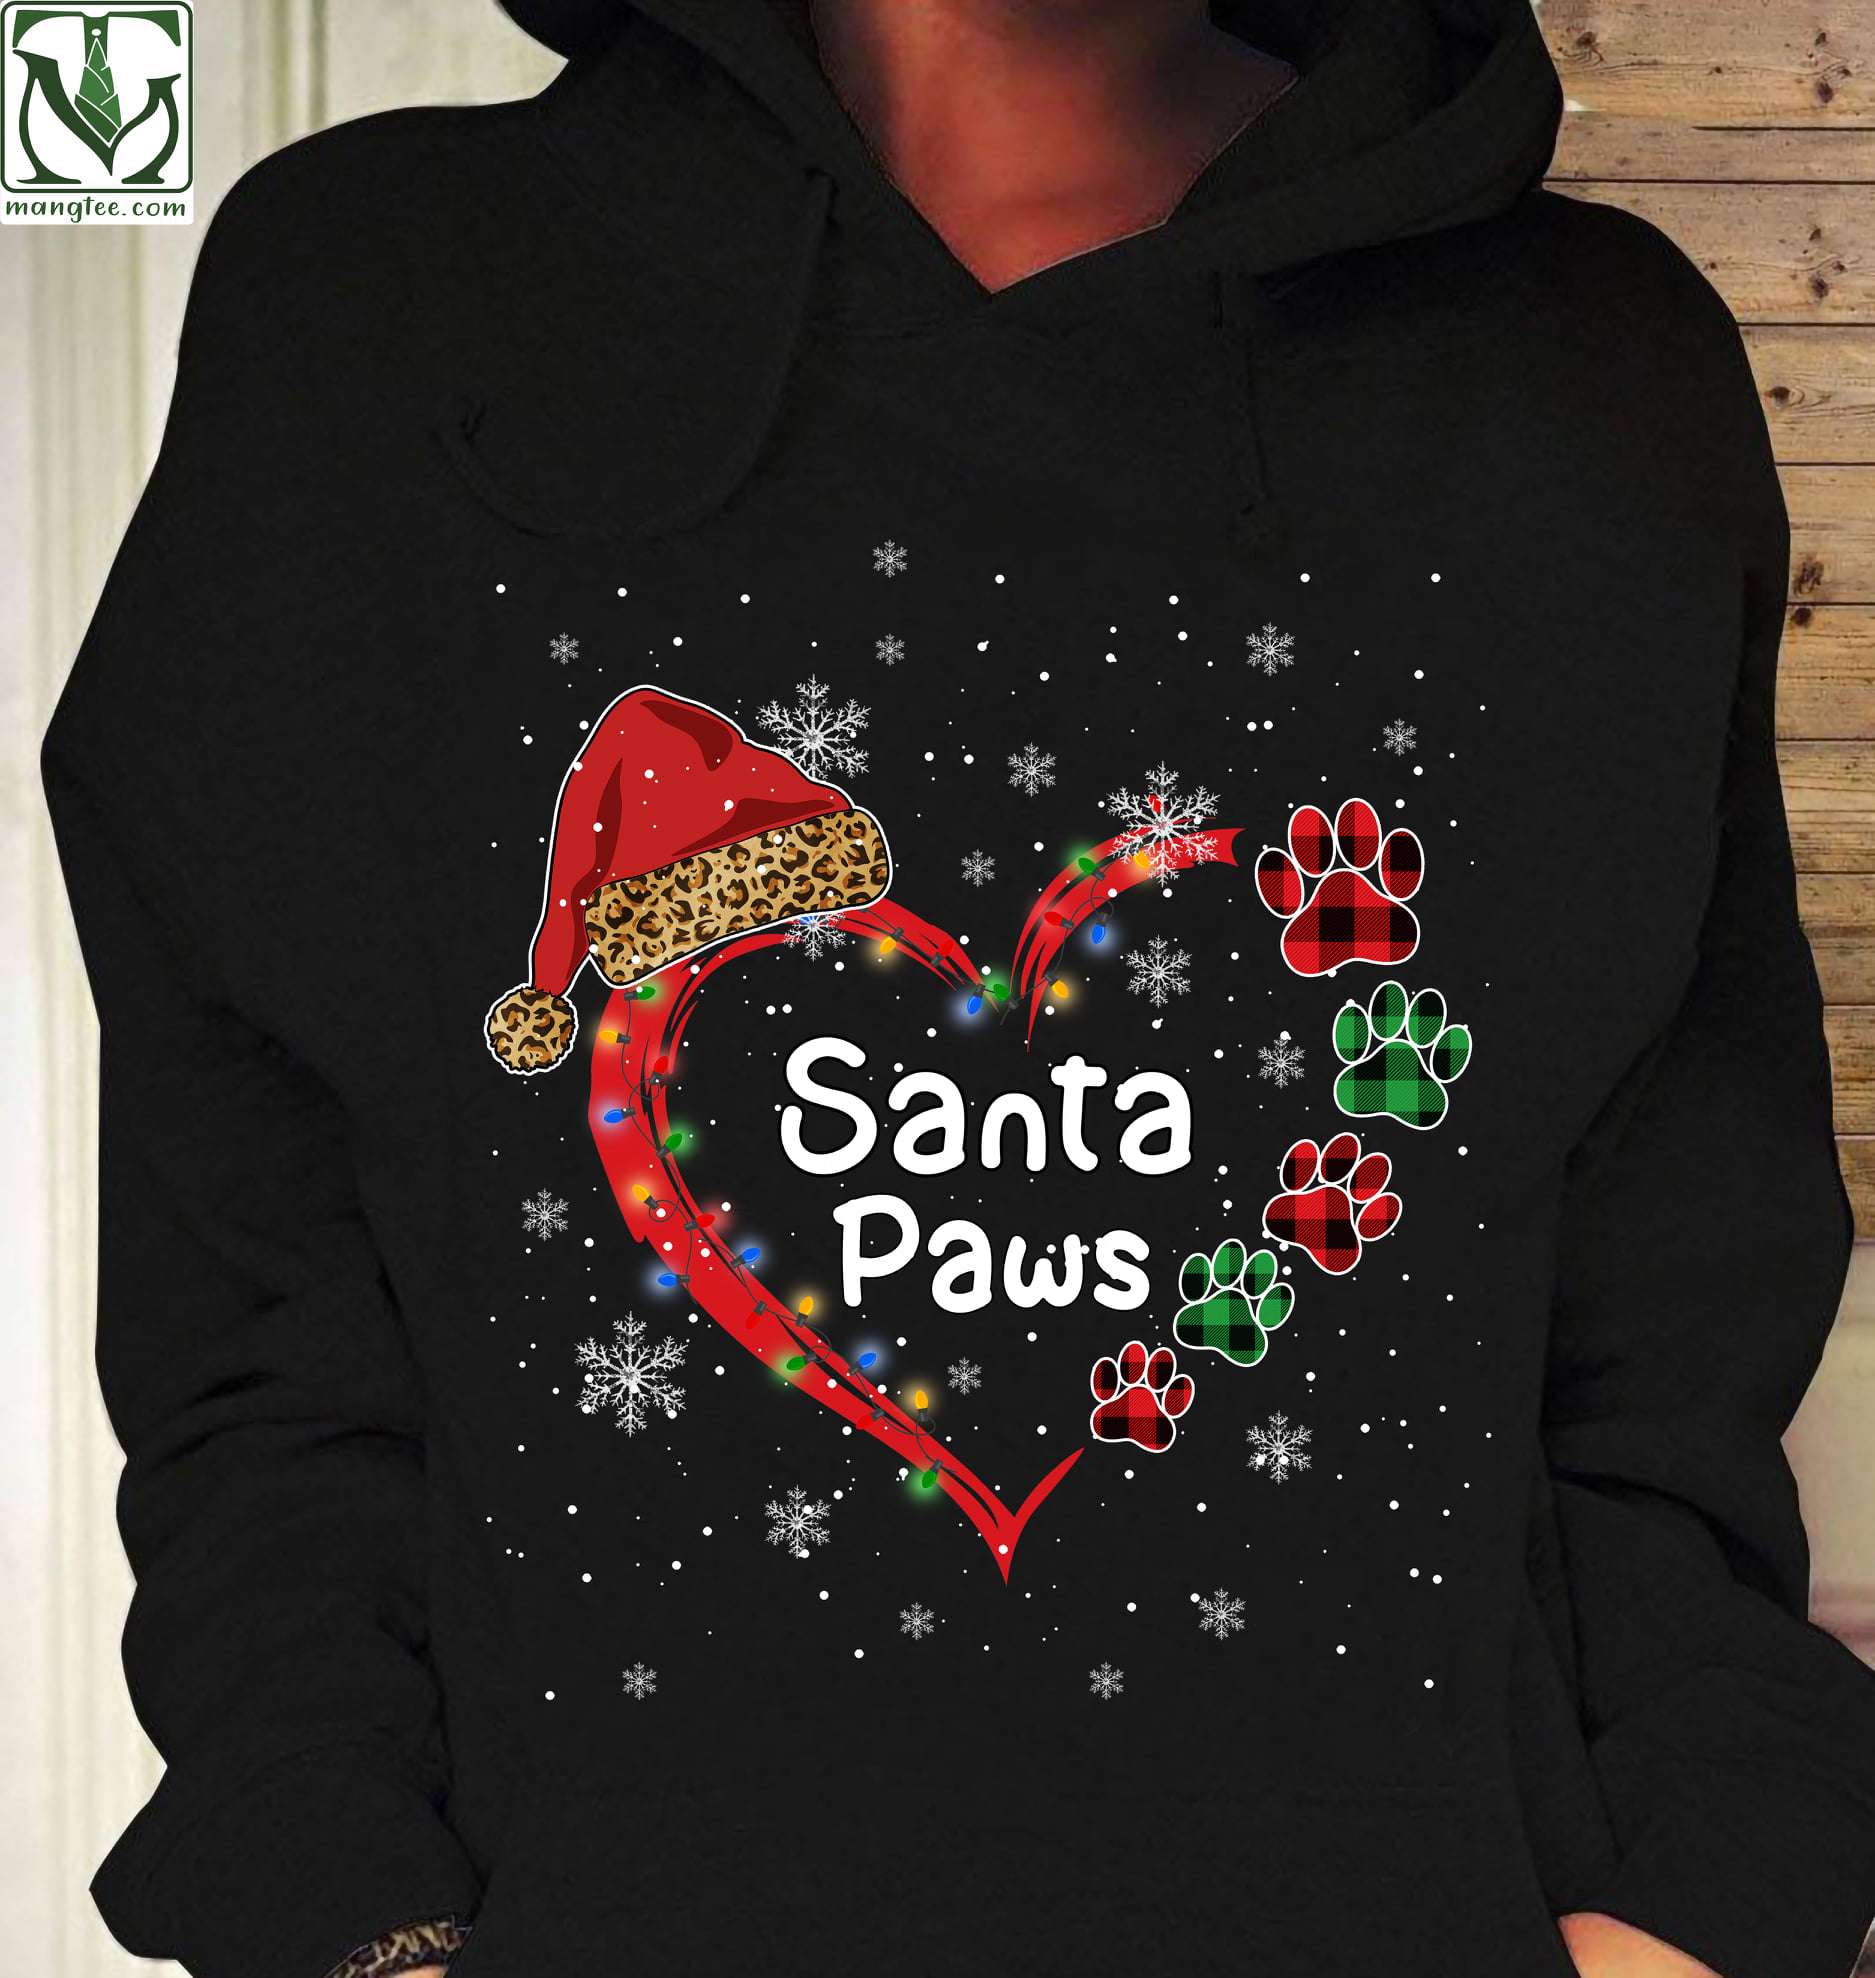 Santa Paws - Christmas Ugly Sweater, Christmas day gift, Merry Christmas